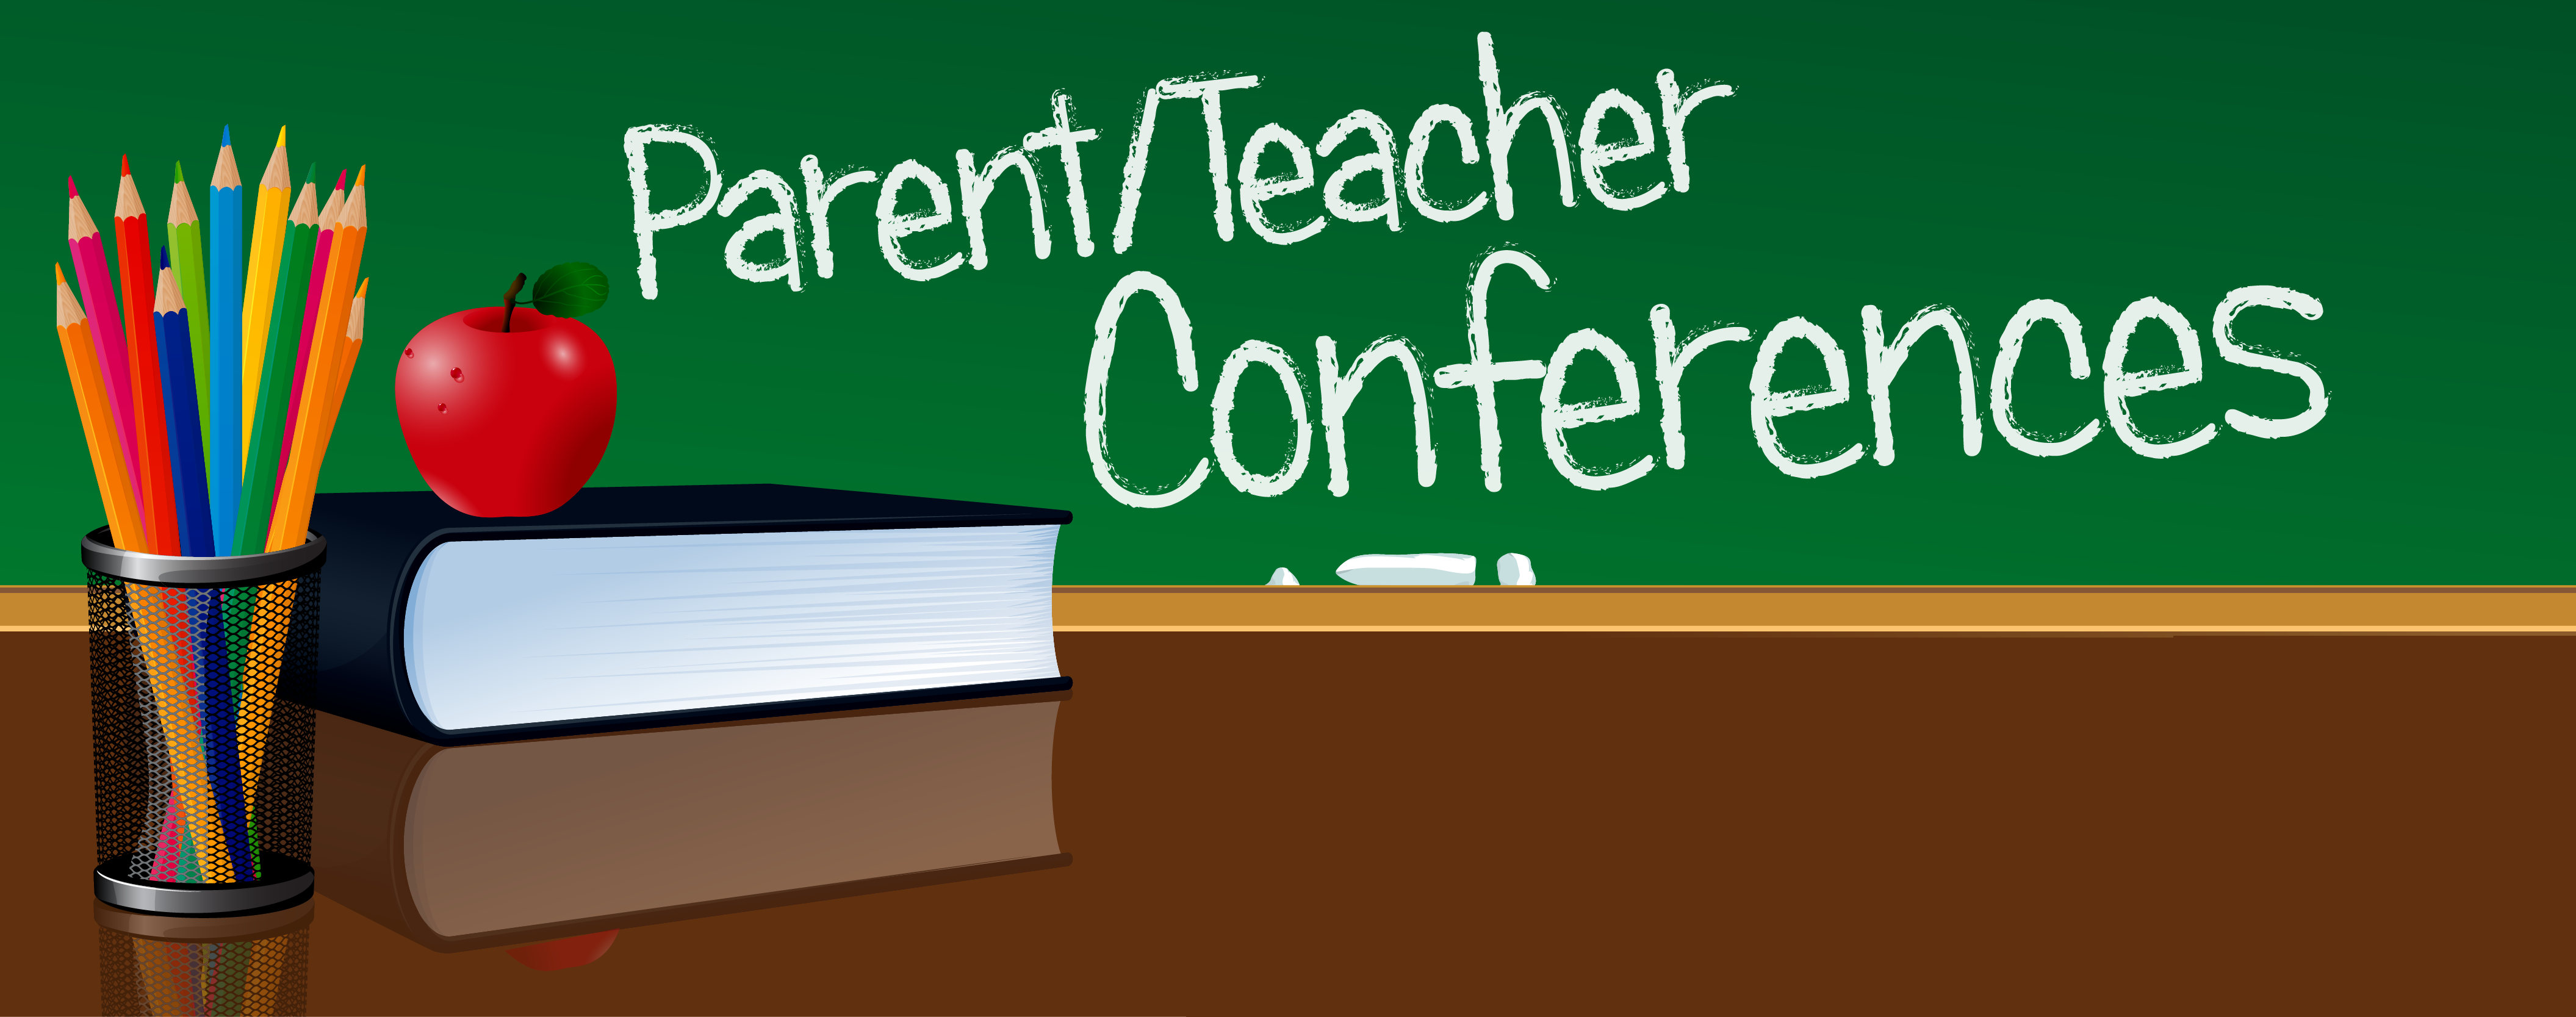 Parent-Teacher-Conferences-01.png